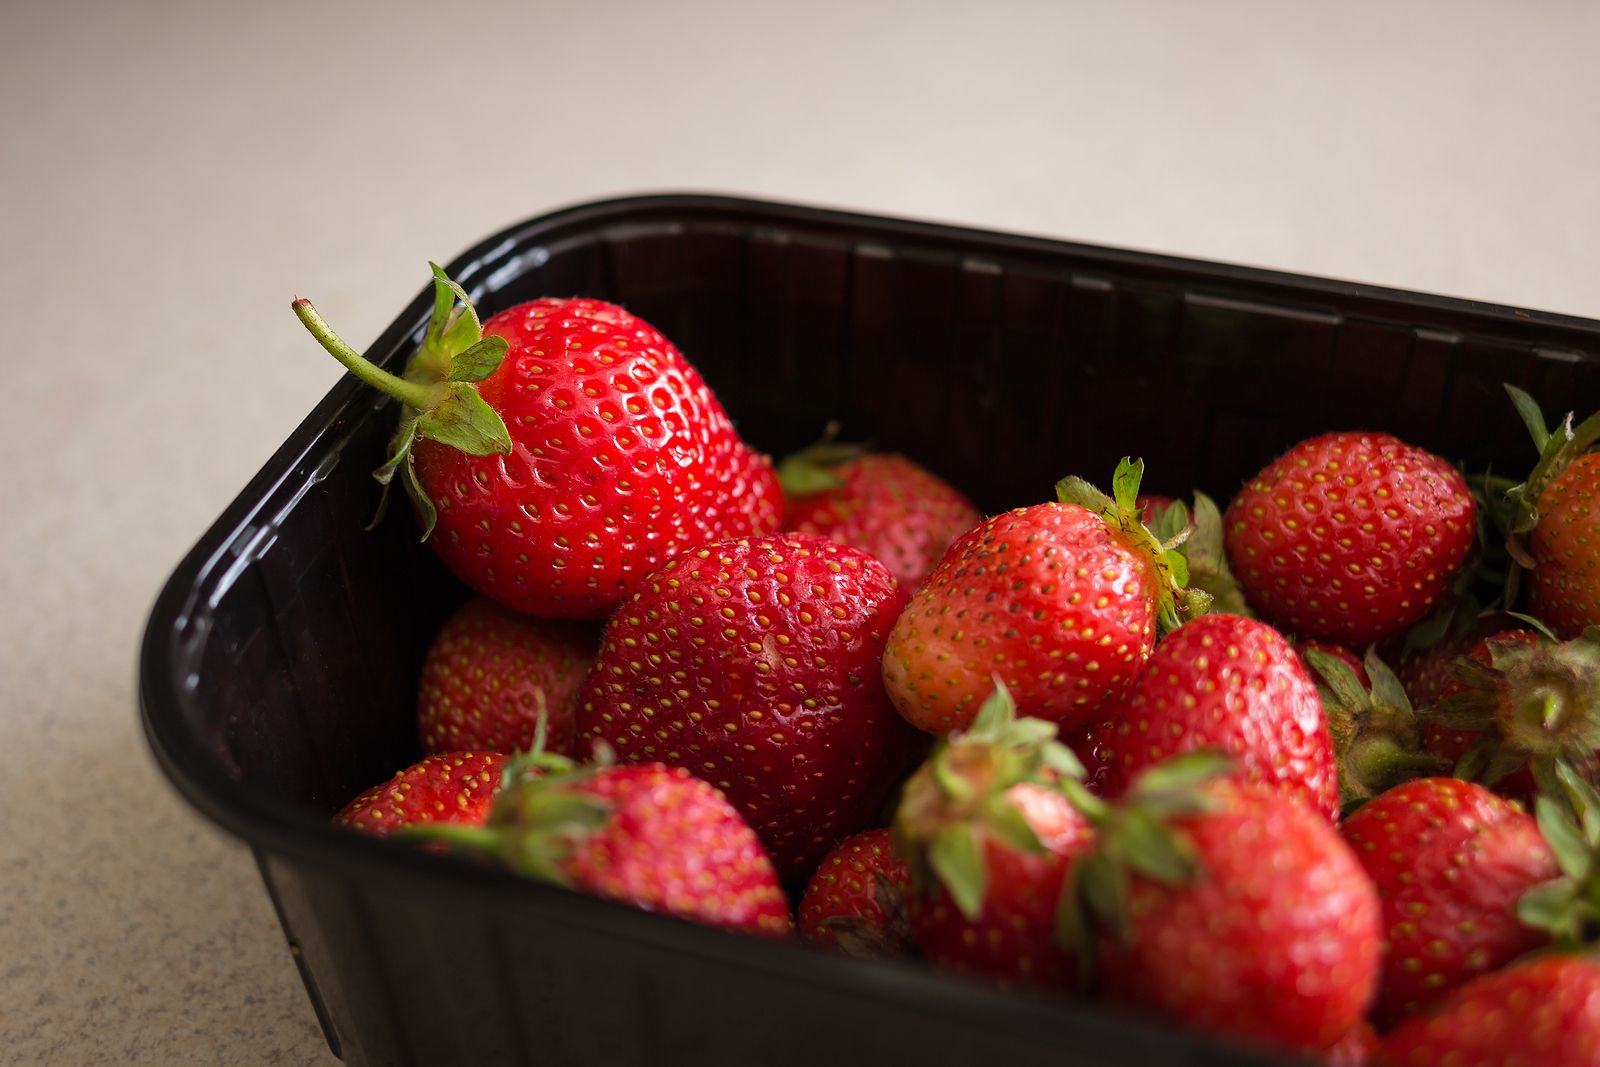 La desinformacion sobre problemas fitosanitarios de frutas perjudica al consumidor y al mercado